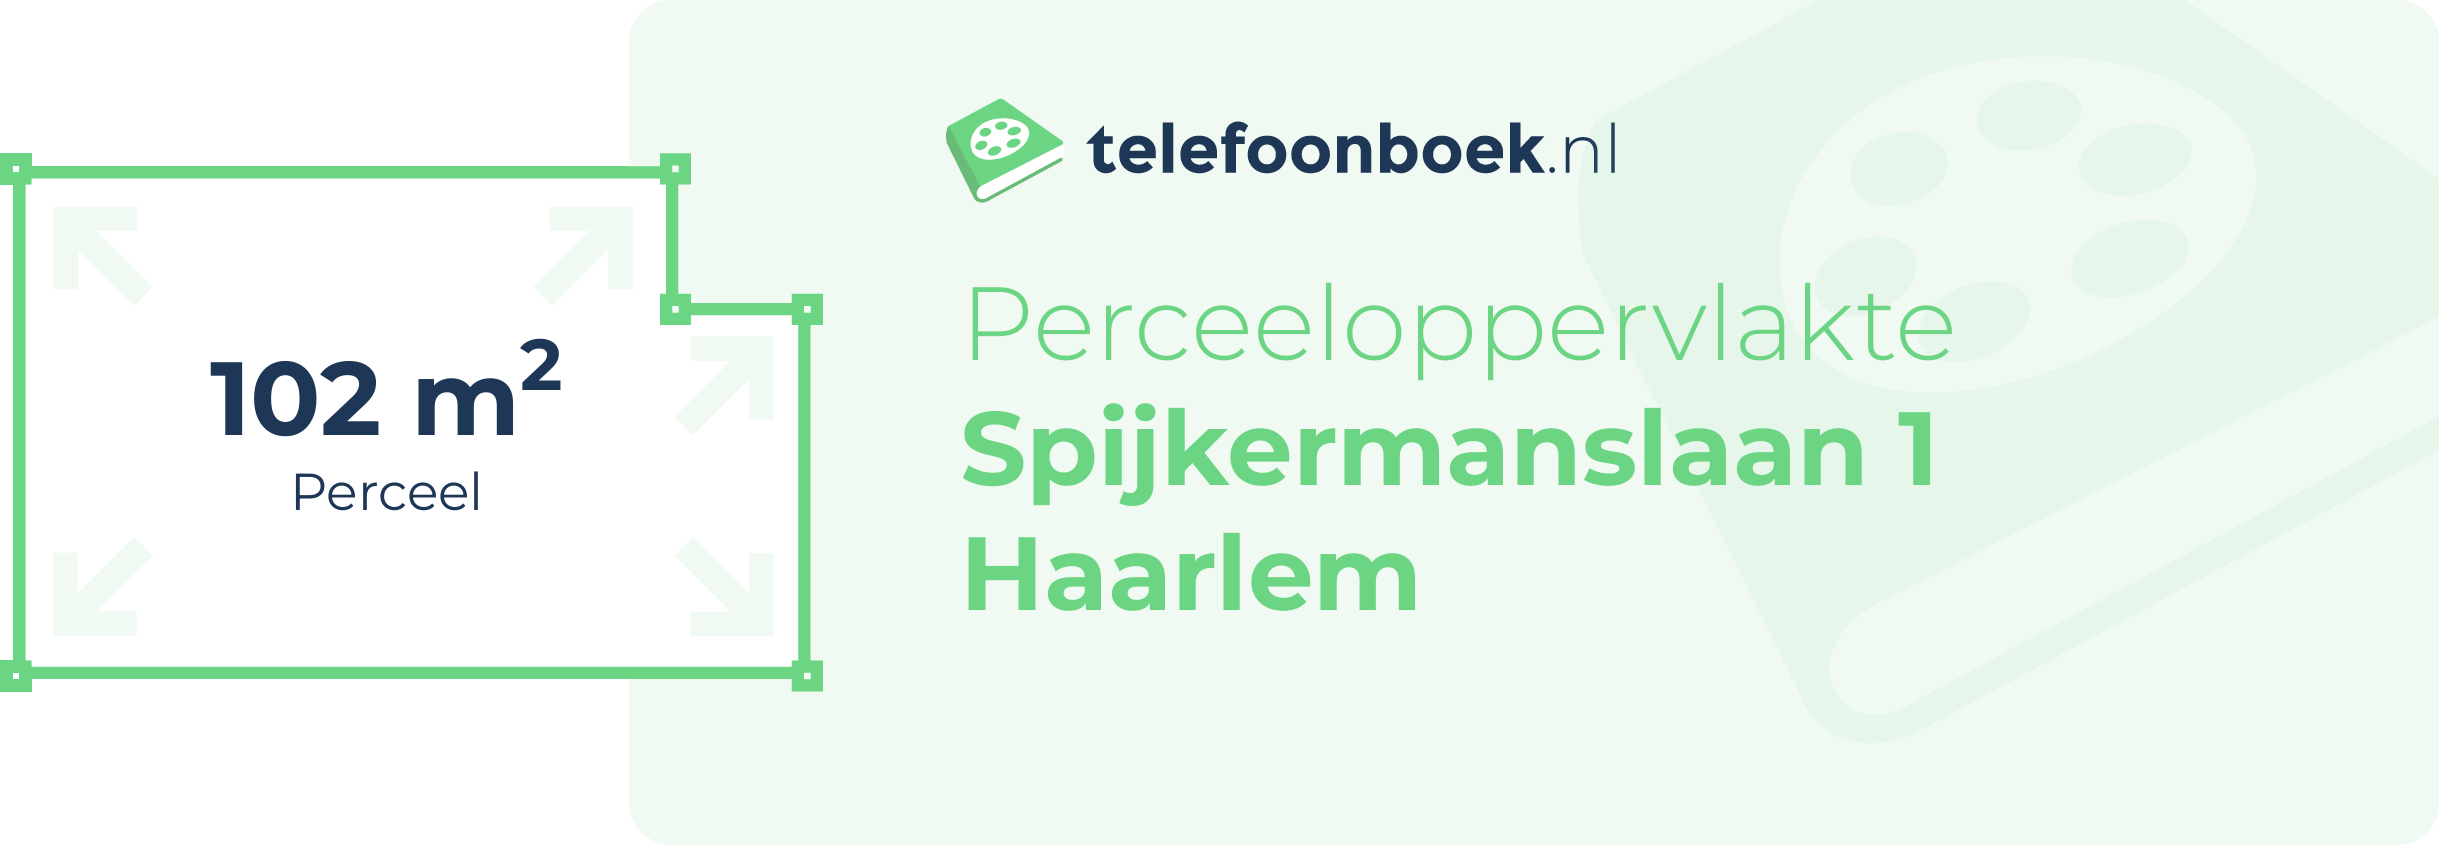 Perceeloppervlakte Spijkermanslaan 1 Haarlem